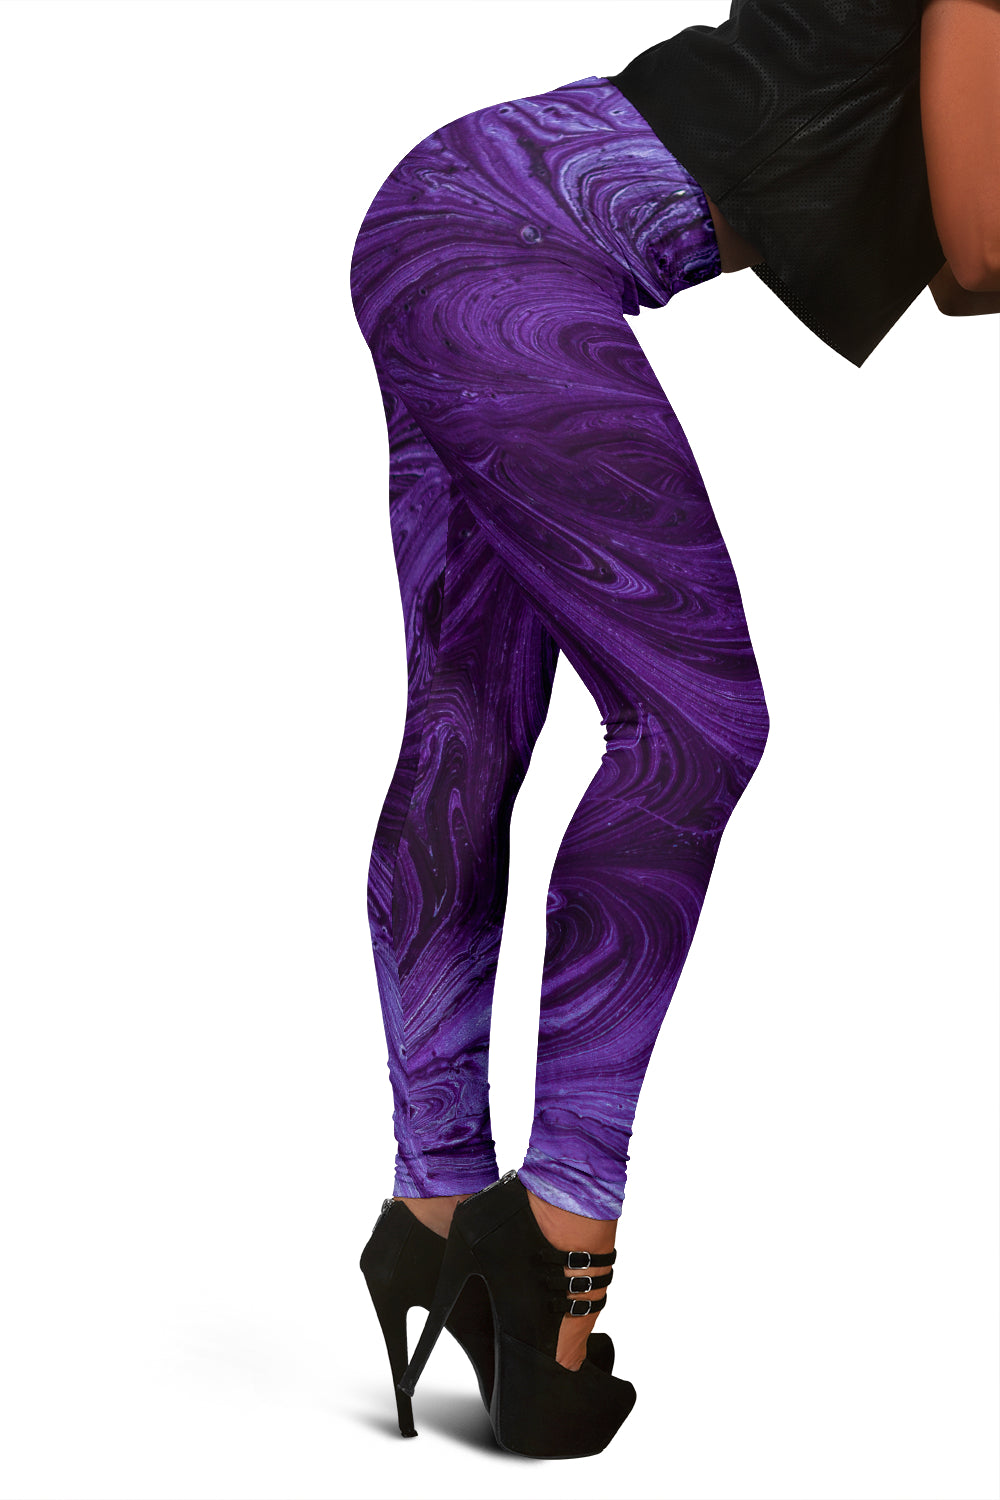 Purple Swirls Leggings